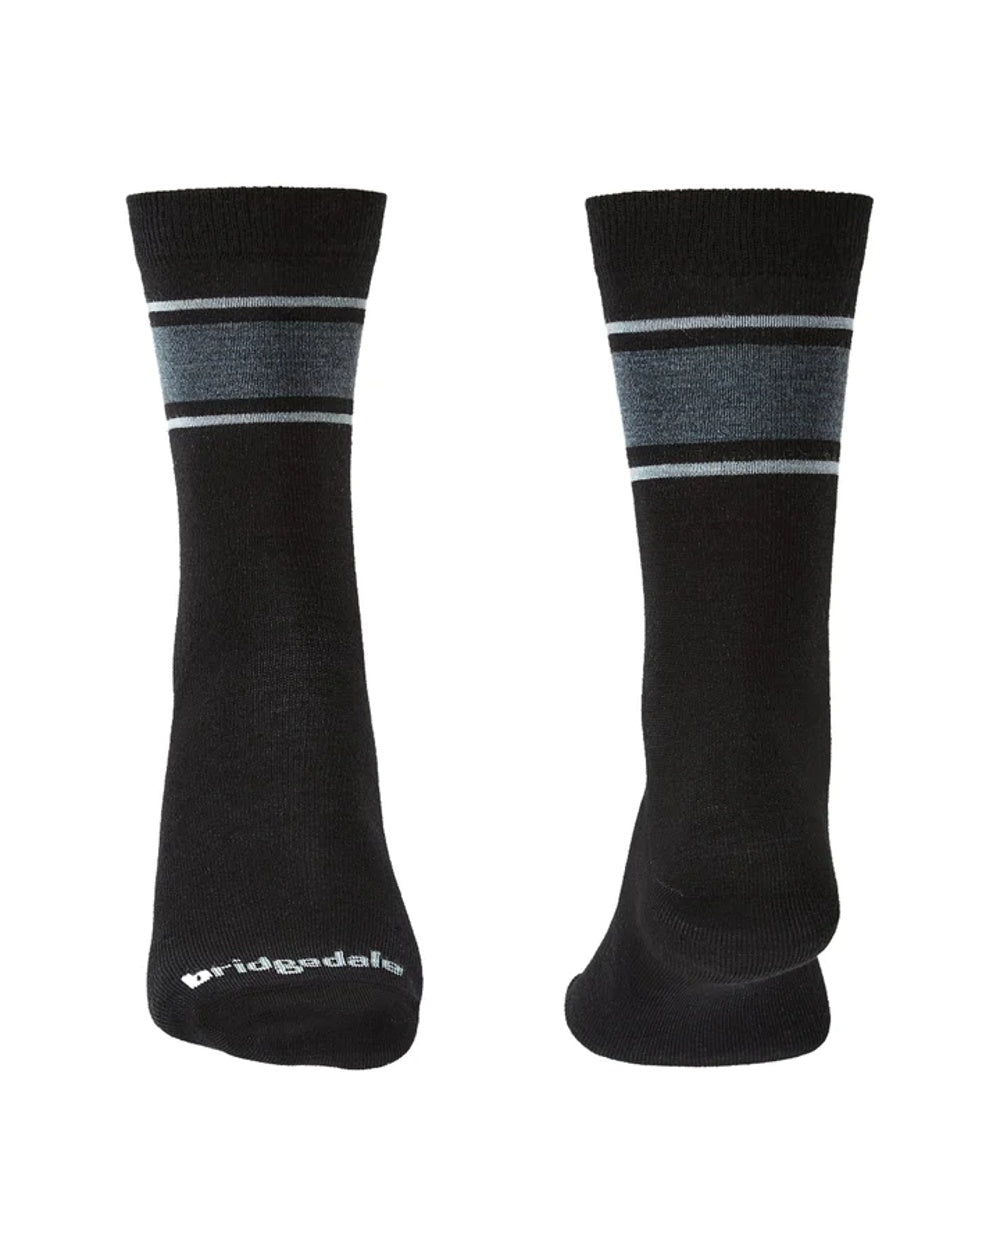 Black/Light Grey coloured Bridgedale Ultra Light Merino Performance Socks on white background 